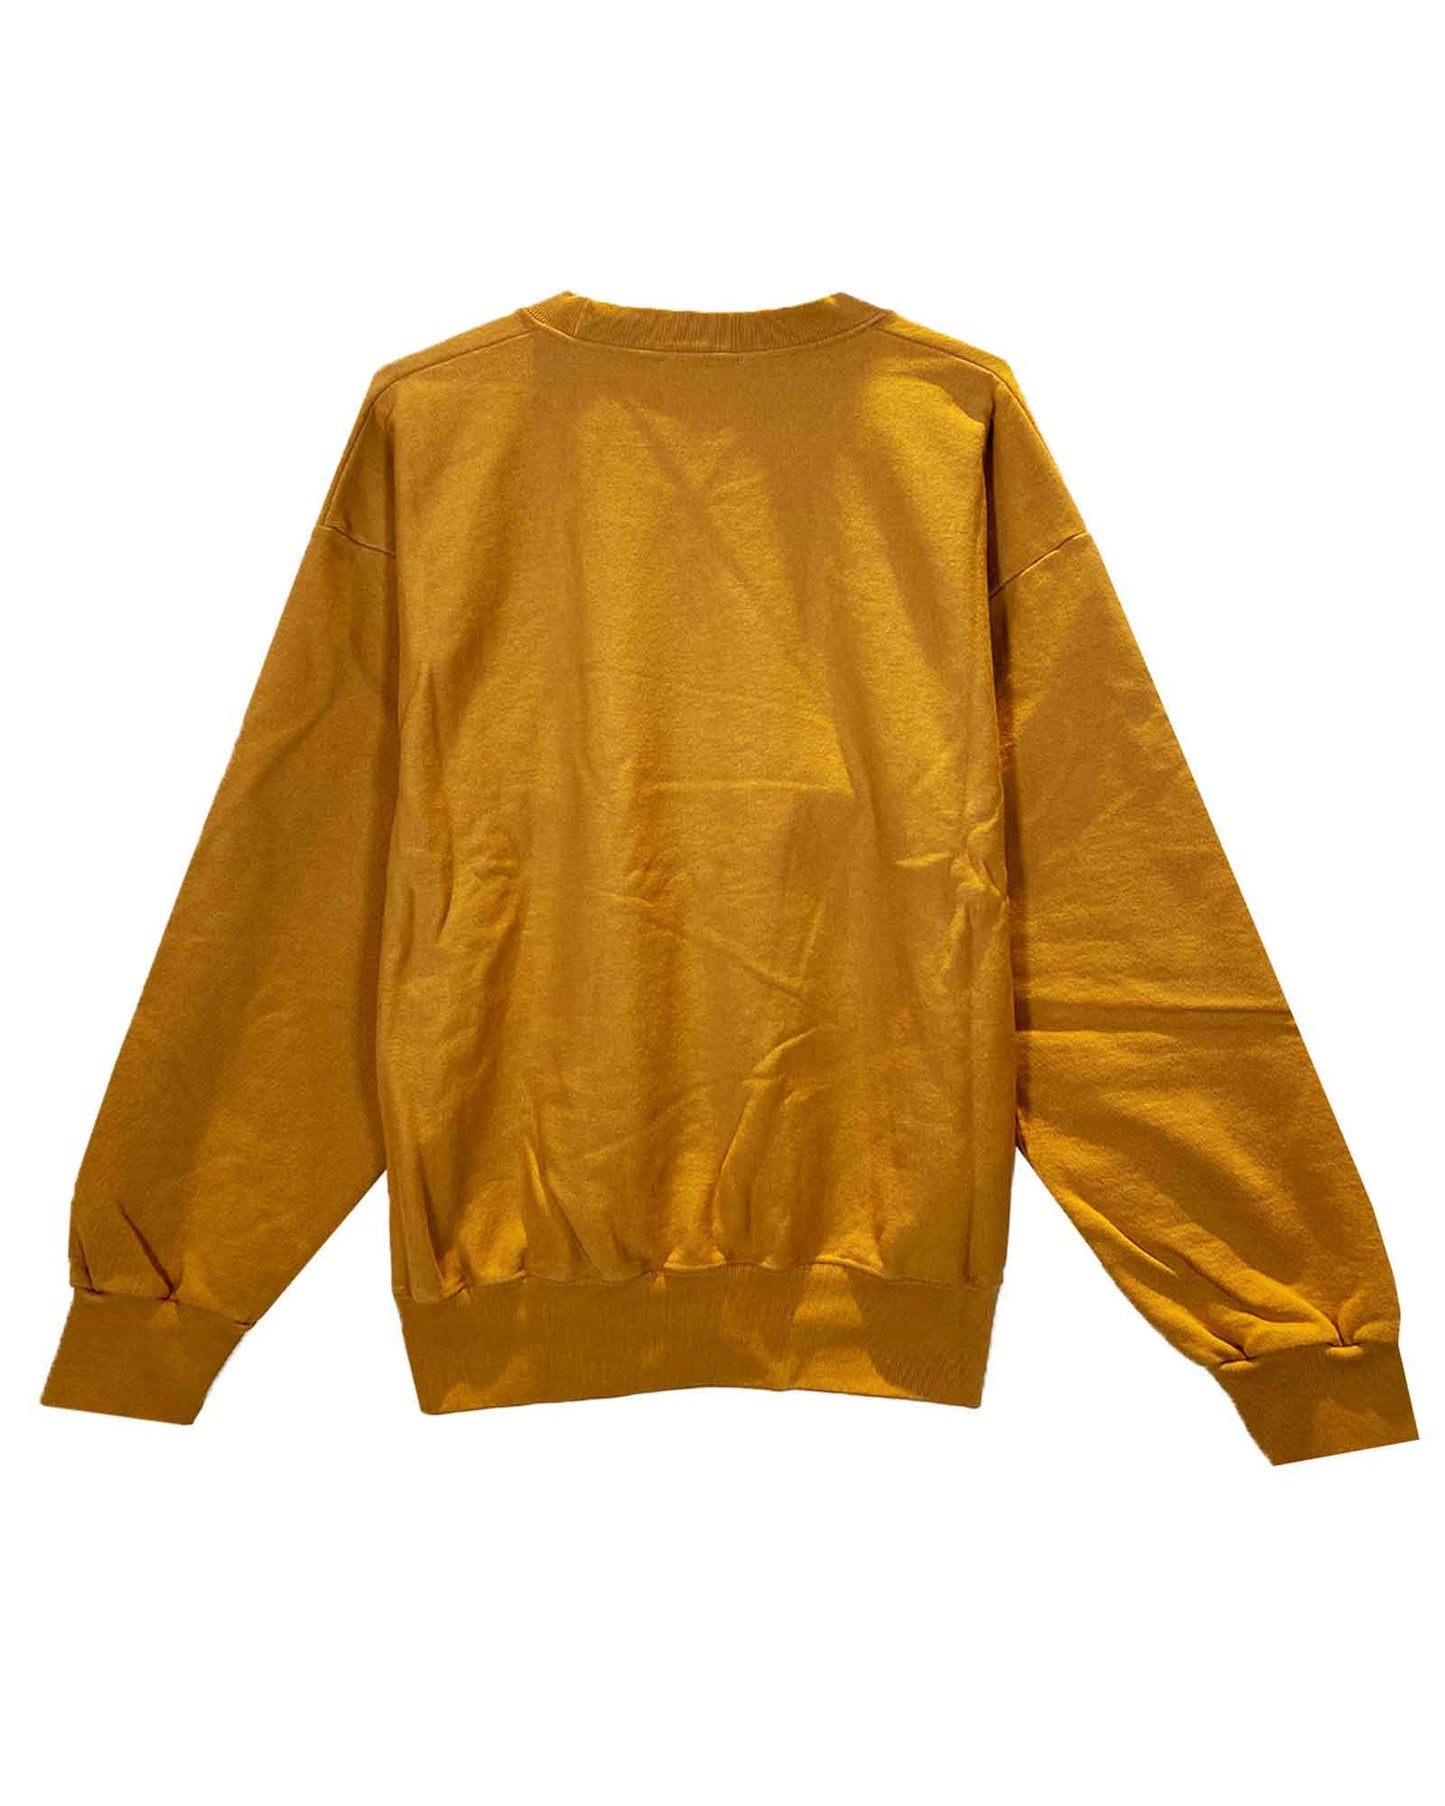 アリーズ/Premium Temple Sweatshirt/スウェット/Camel